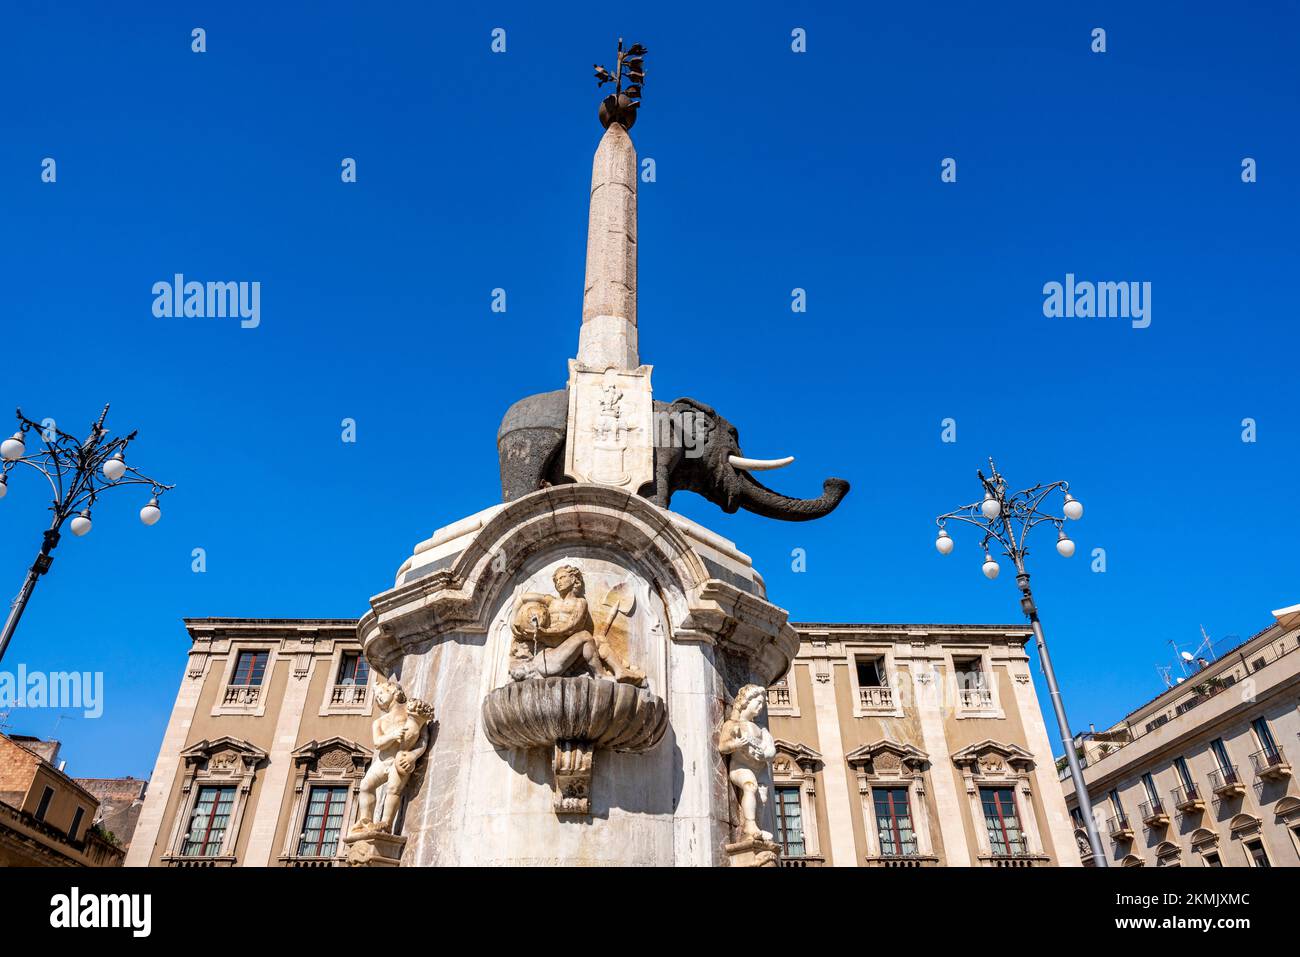 Fontana dell Elefante (Fountain of the Elephant), Piazza del Duomo, Catania, Sicily, Italy. Stock Photo